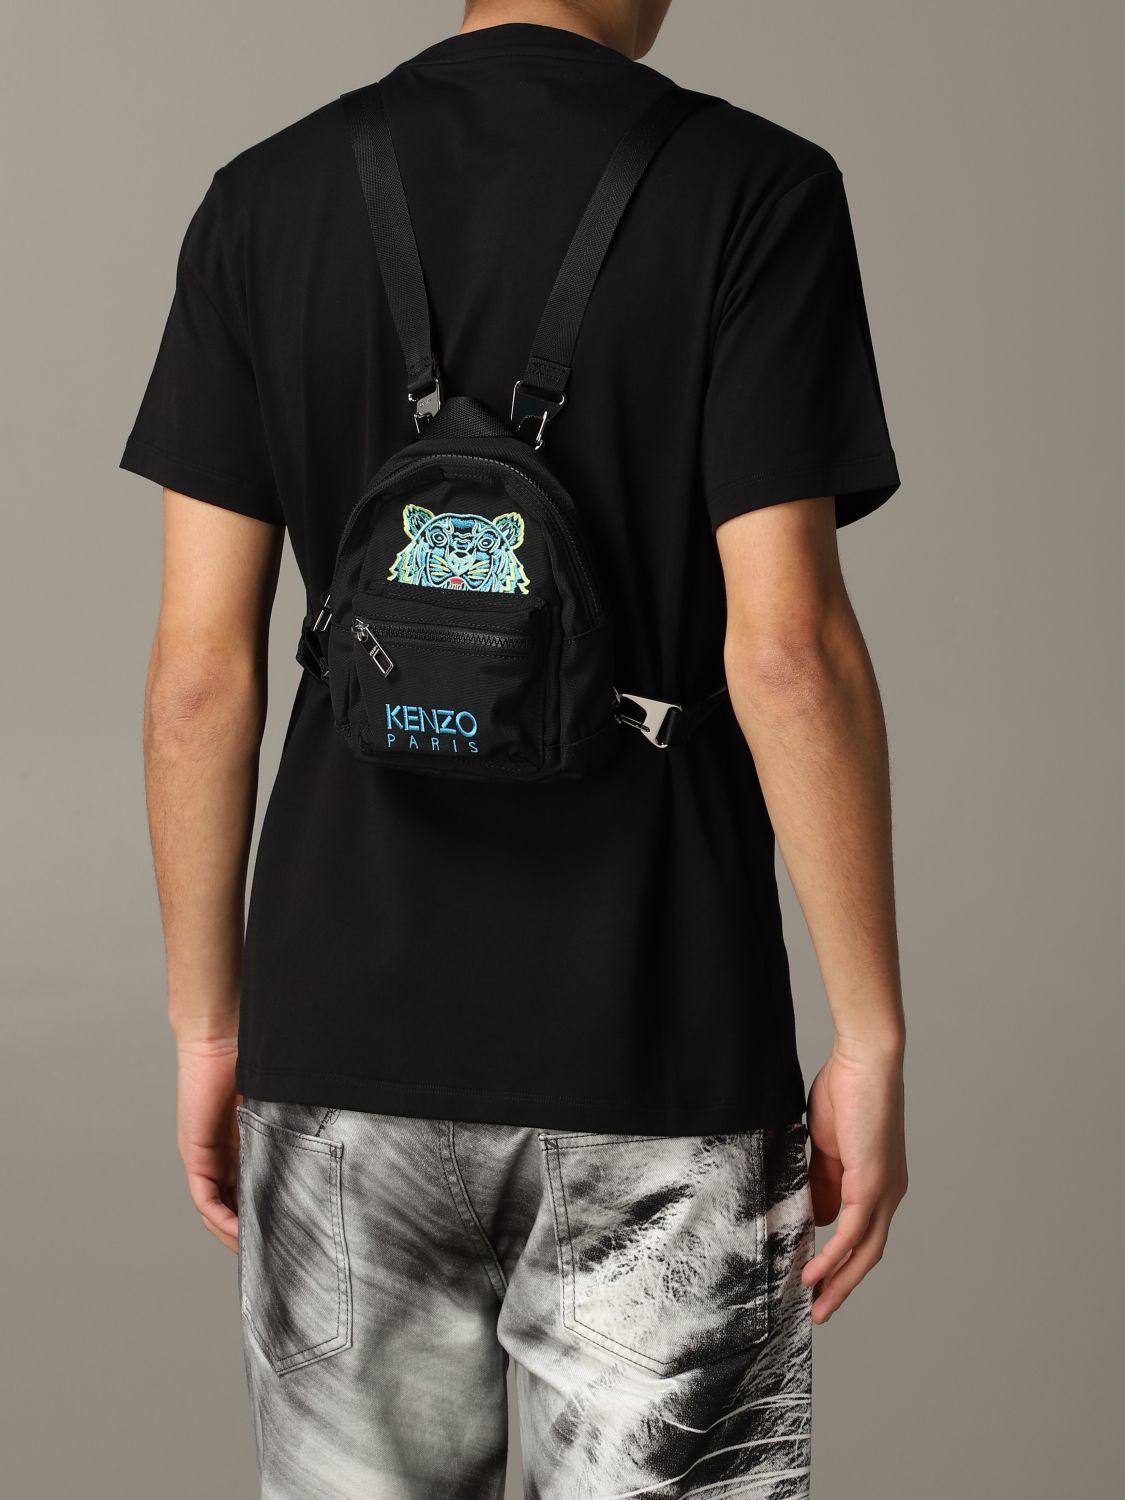 mini backpack kenzo